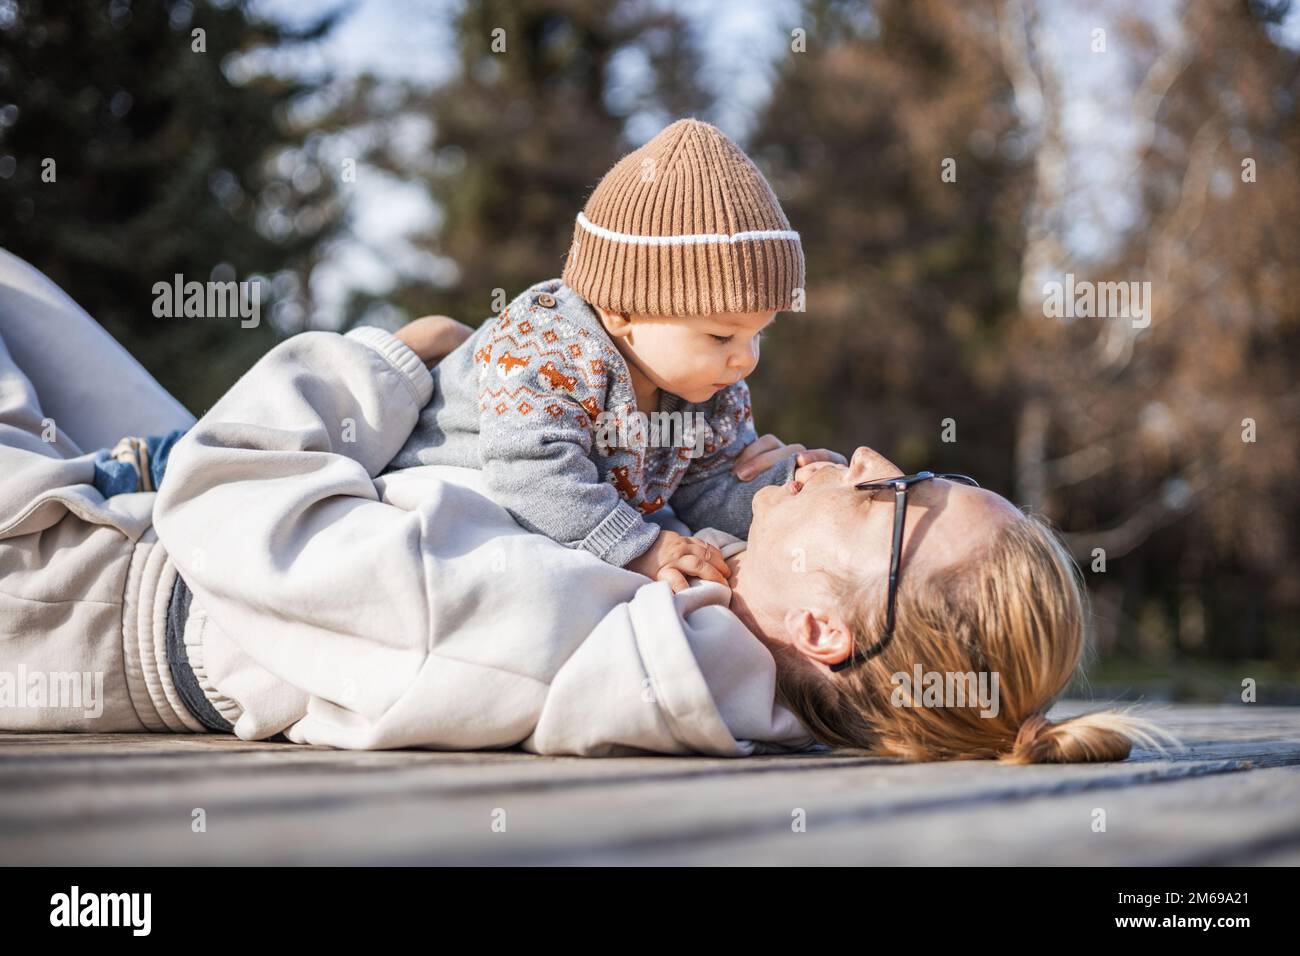 Glückliche Familie. Junge Mutter, die mit ihrem kleinen Jungen an einem sonnigen Herbsttag außerhalb der Tür spielt. Porträt von mutter und Sohn auf einer hölzernen Plattform am See. Positive menschliche Emotionen, Gefühle, Freude Stockfoto